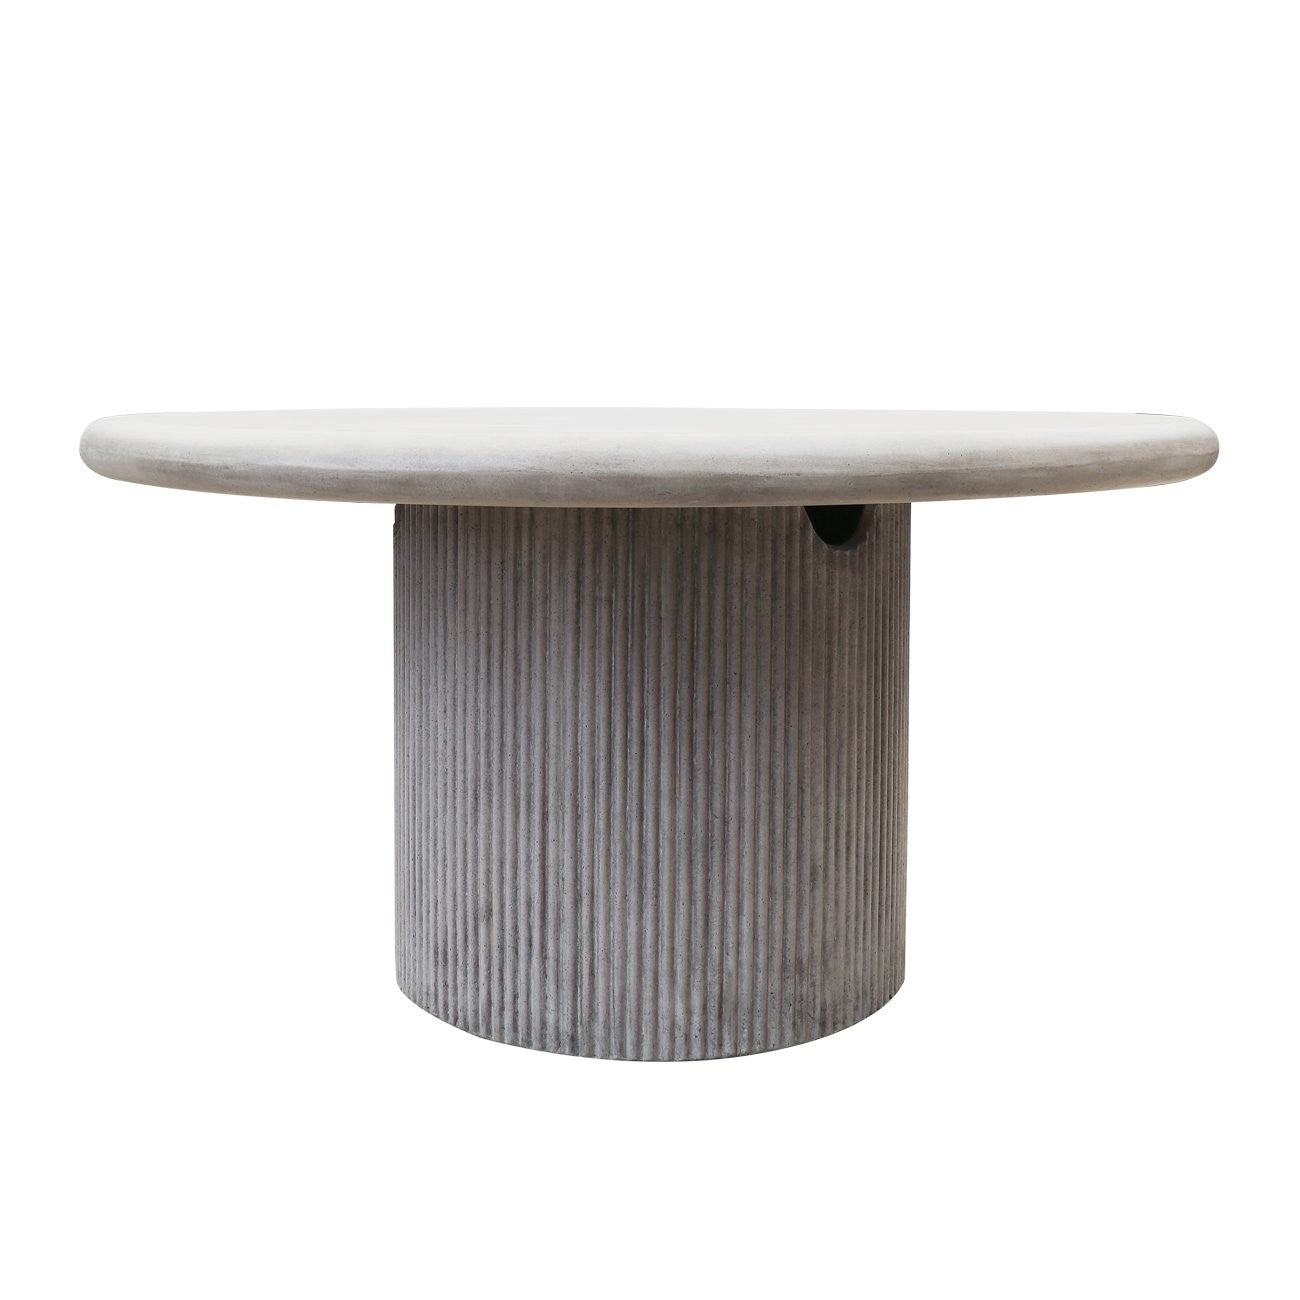 Patras Round Concrete Table - Grey